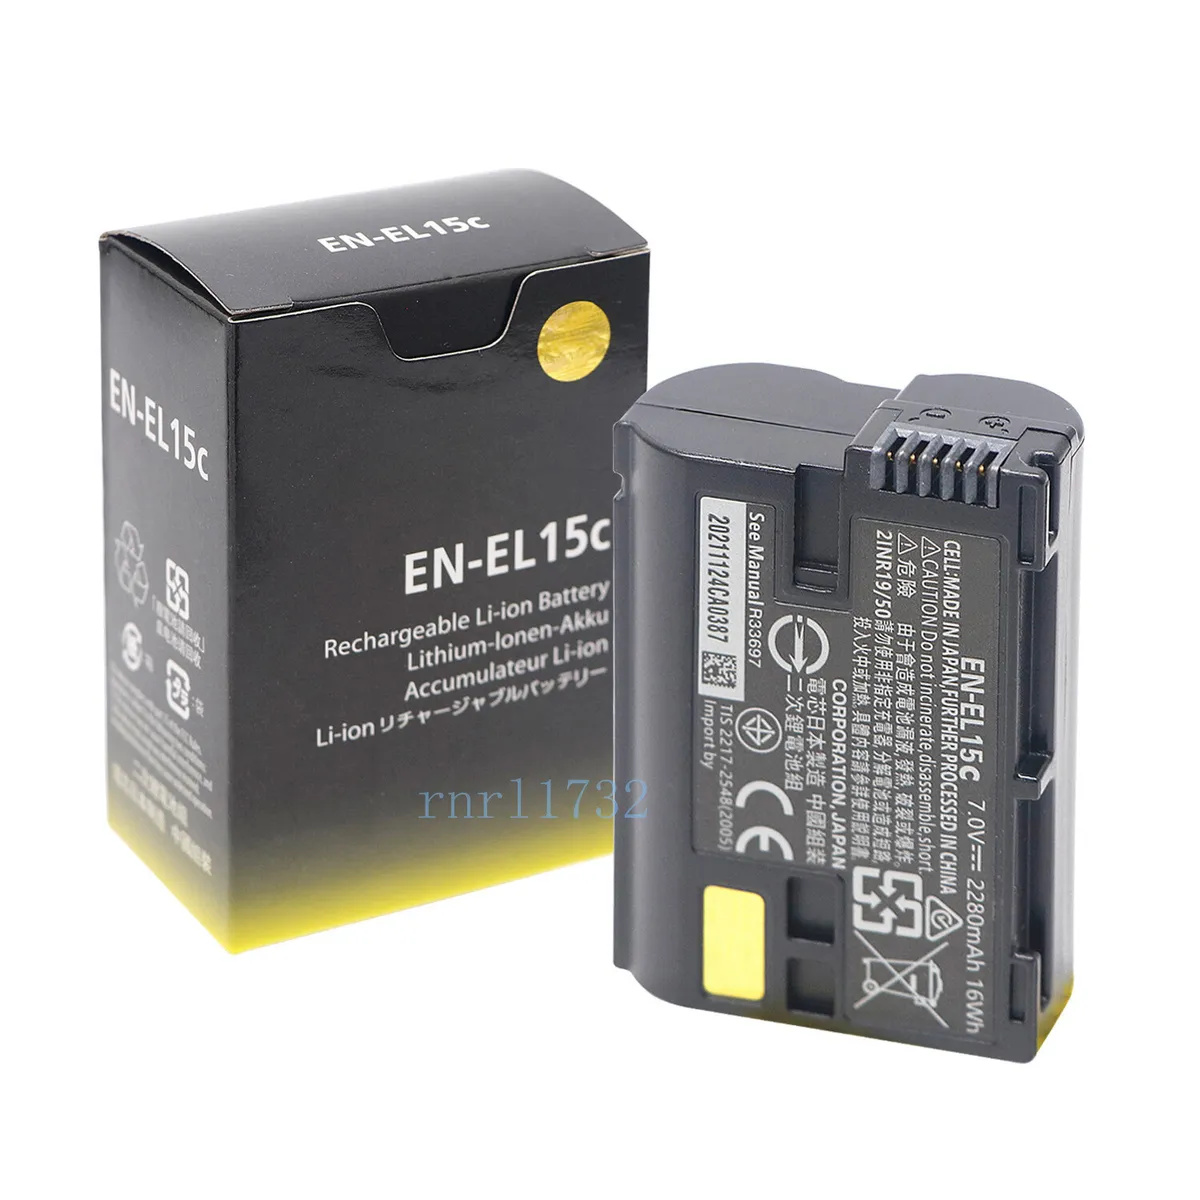 NEW EN-EL15c Battery for Nikon Z5 Z6 Z6II Z7 II D850 D810 D750 Camera MH-25a